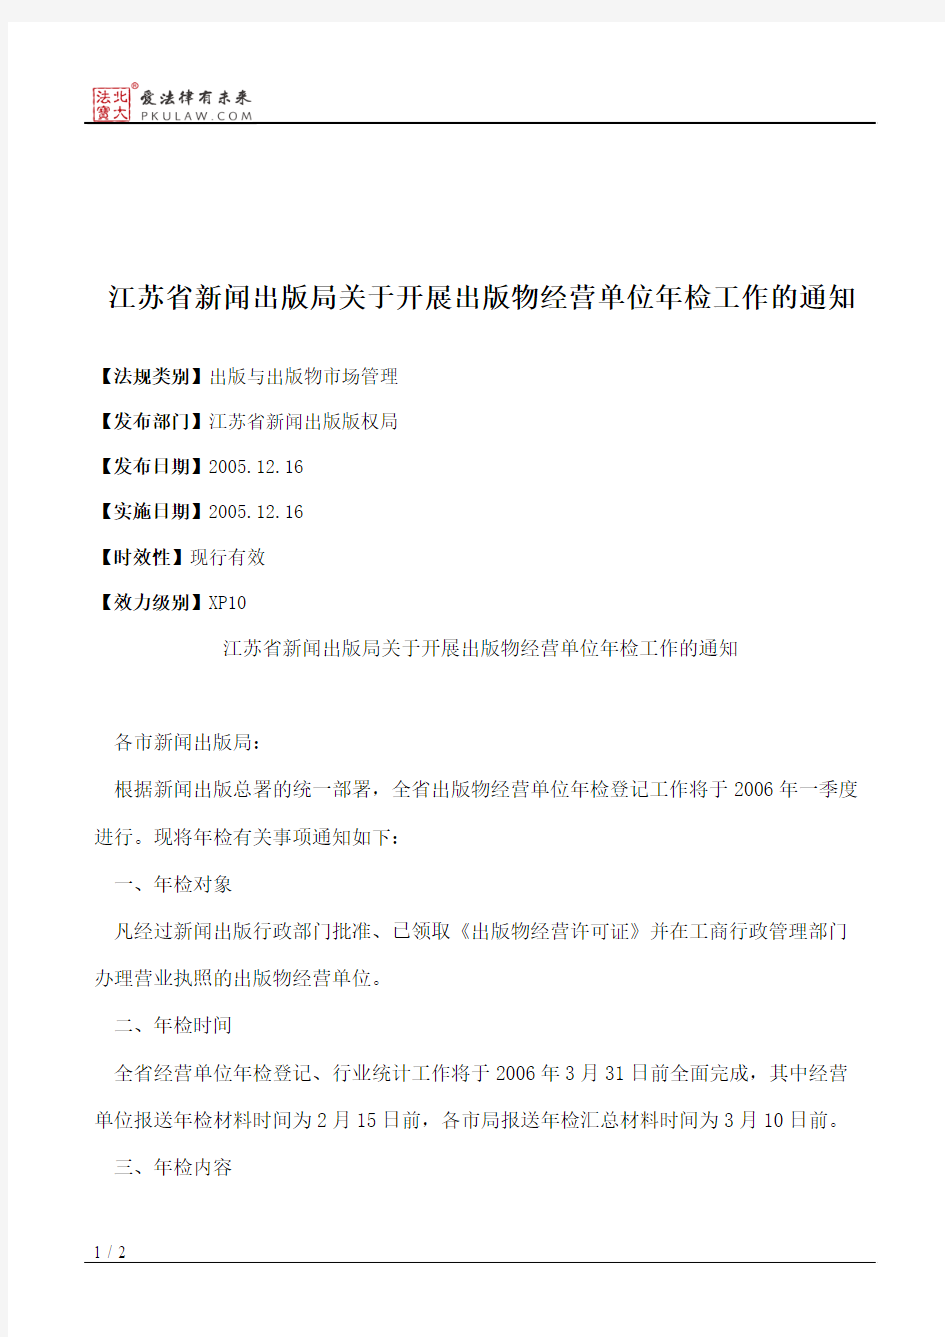 江苏省新闻出版局关于开展出版物经营单位年检工作的通知